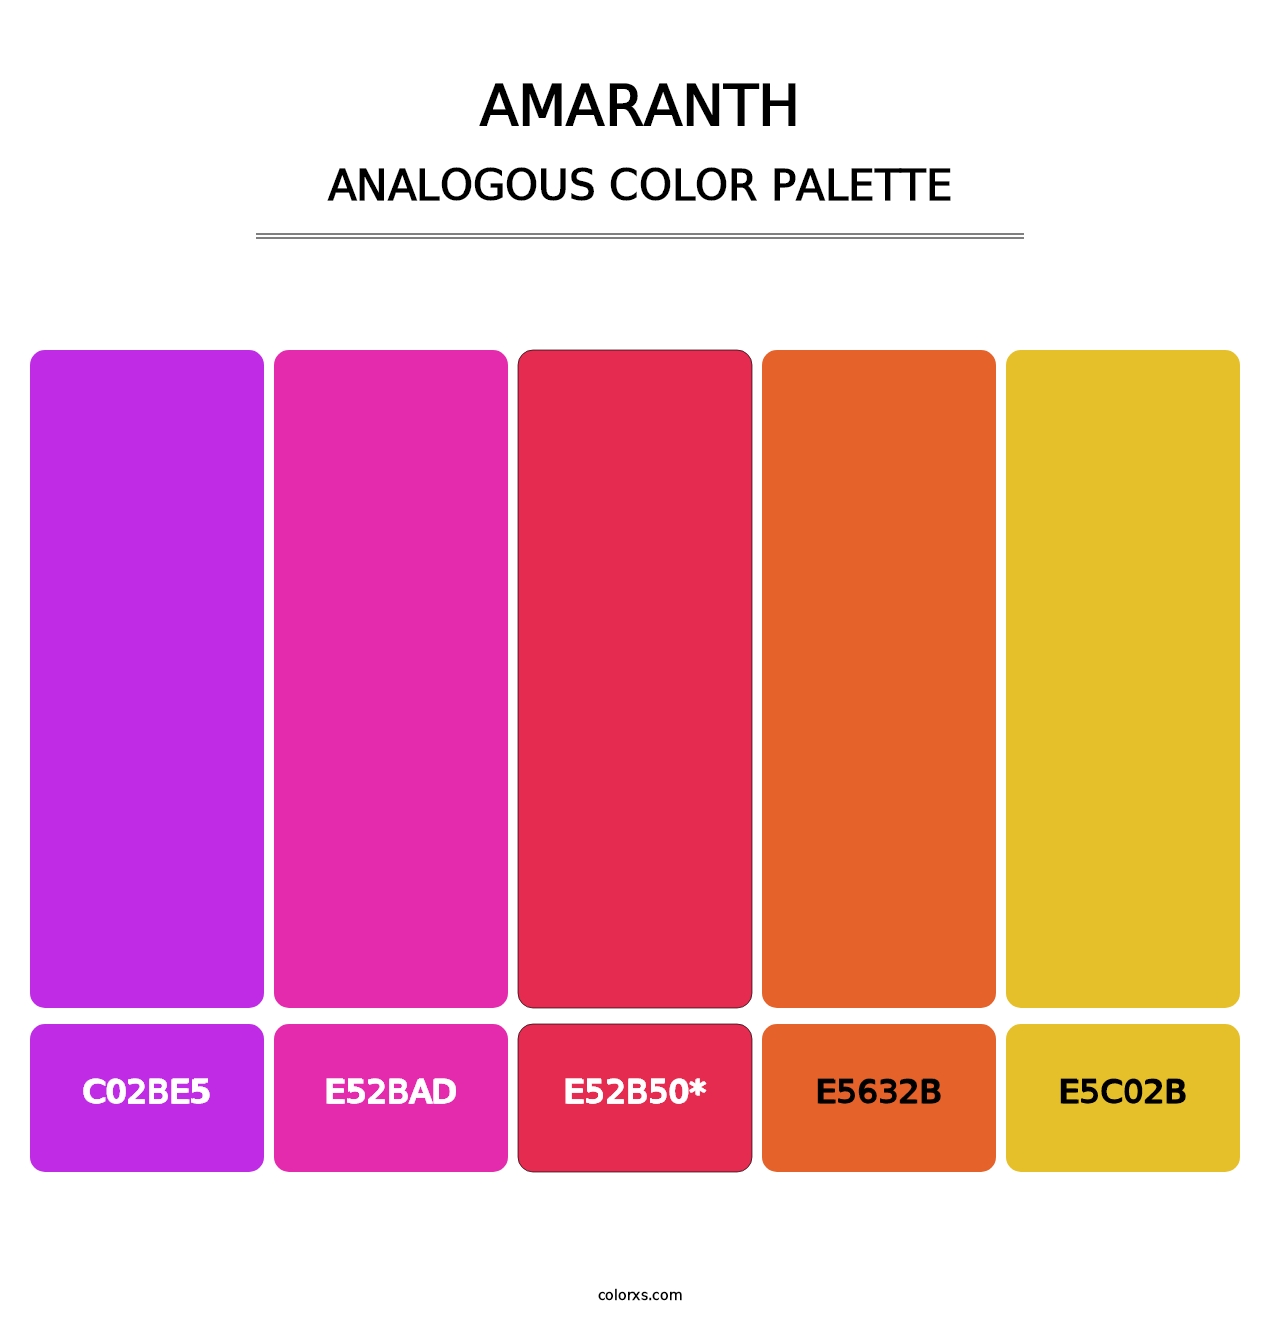 Amaranth - Analogous Color Palette